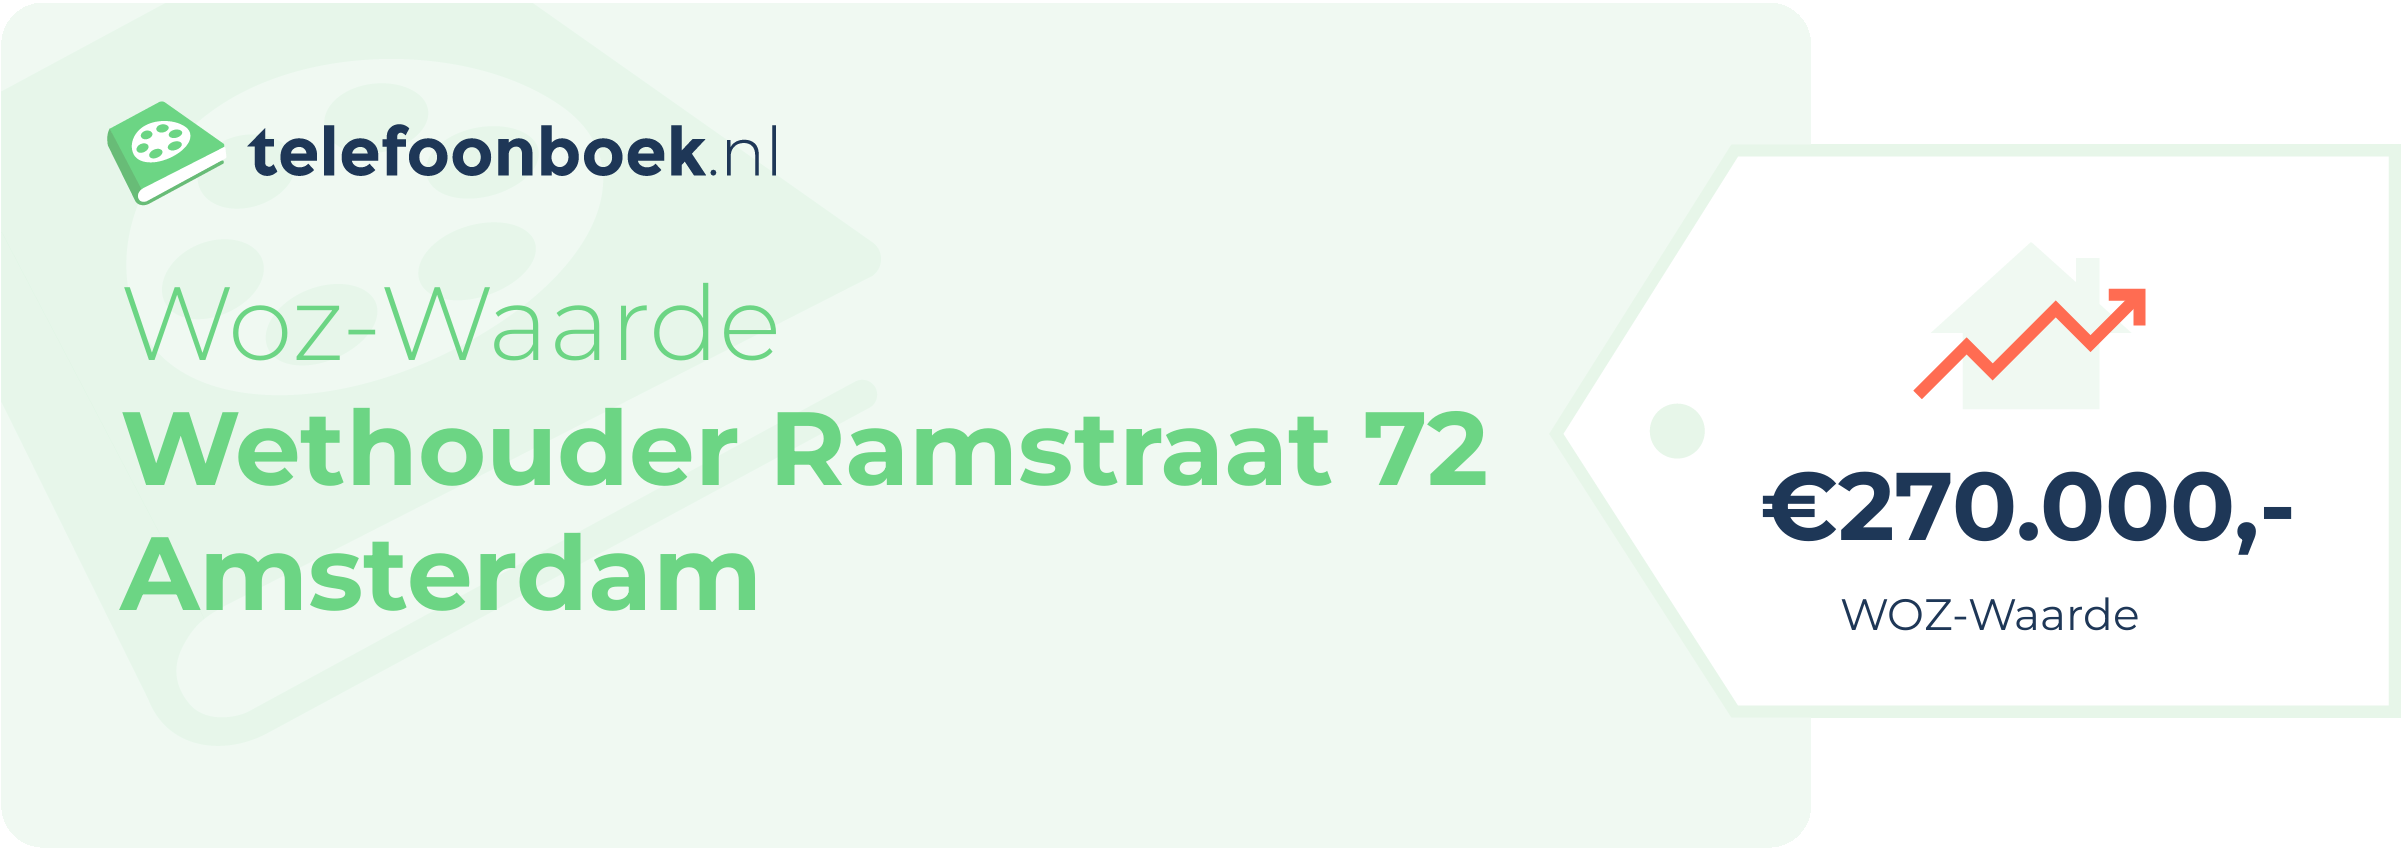 WOZ-waarde Wethouder Ramstraat 72 Amsterdam